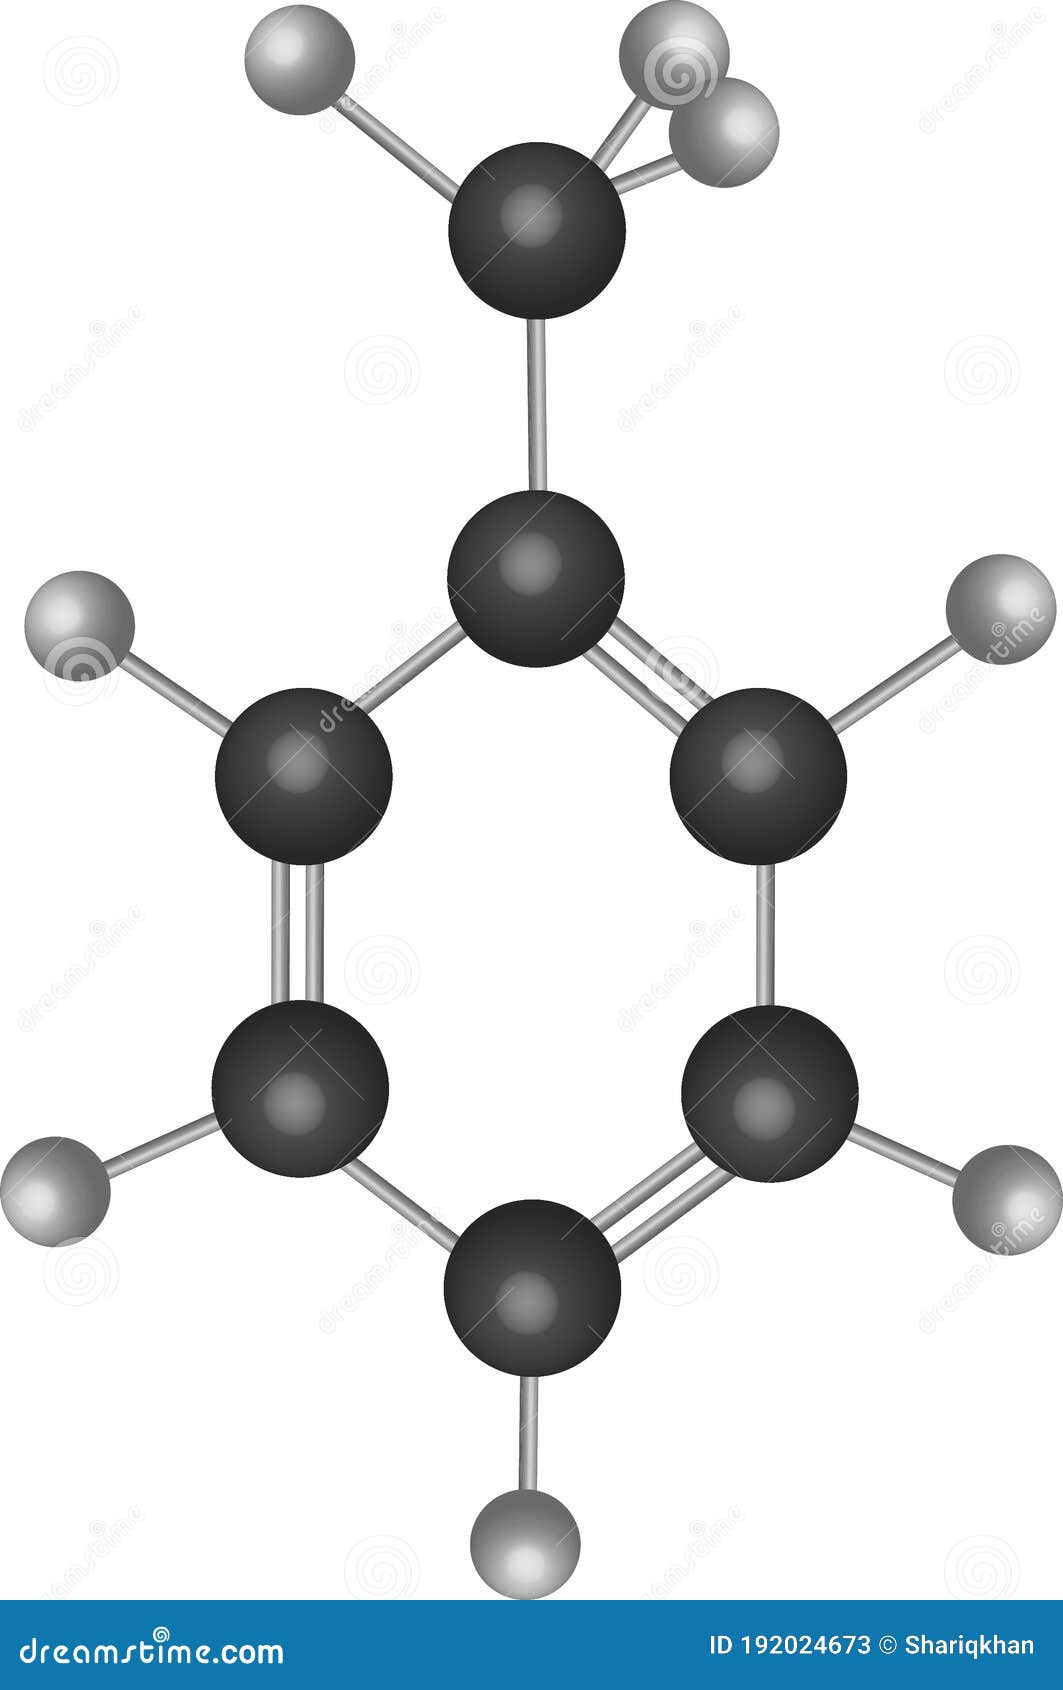 toluene or methylbenzene  c7h8 organic compound molecular structure